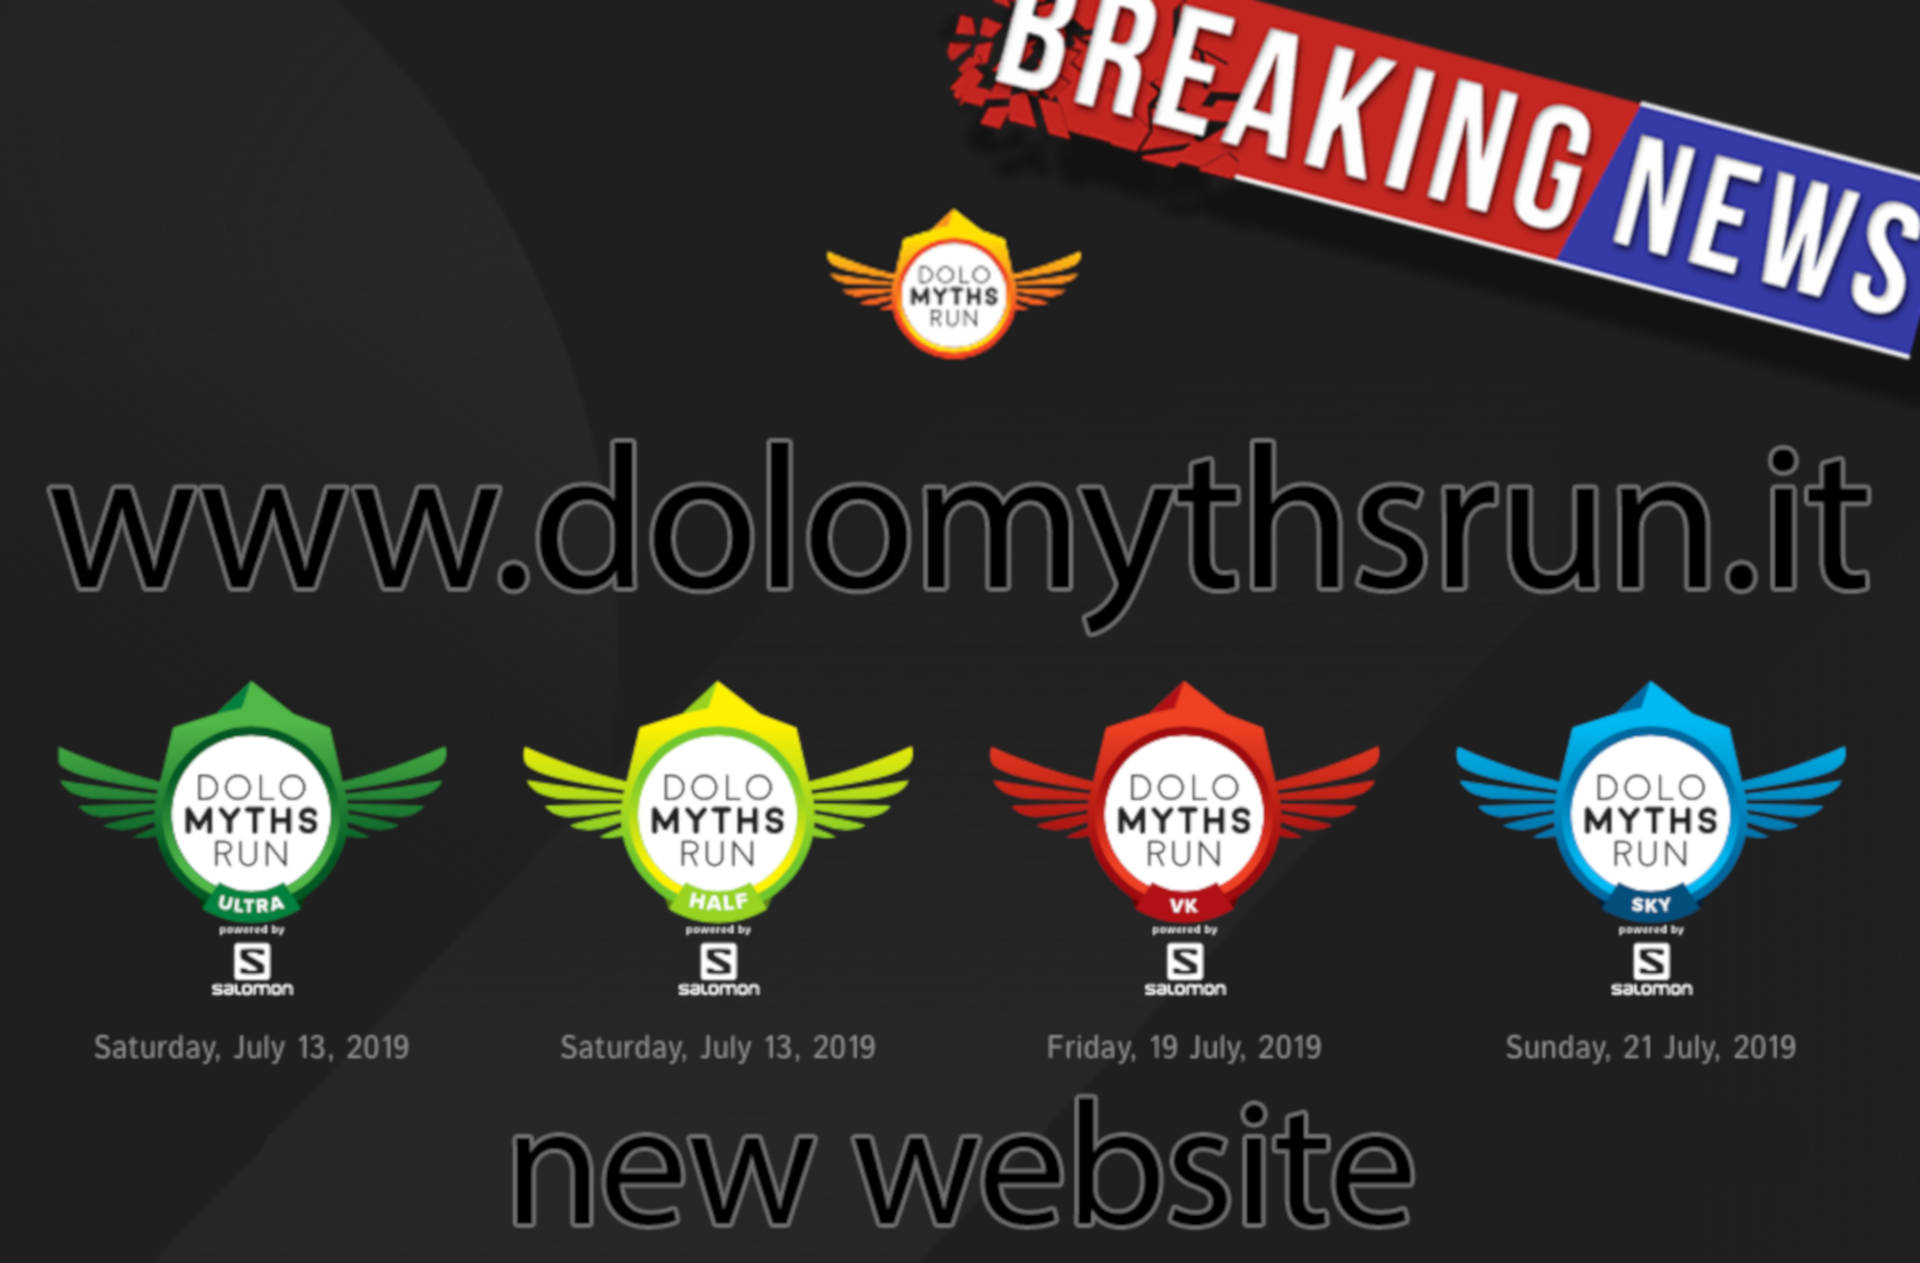 The new website www.dolomythsrun.it is online